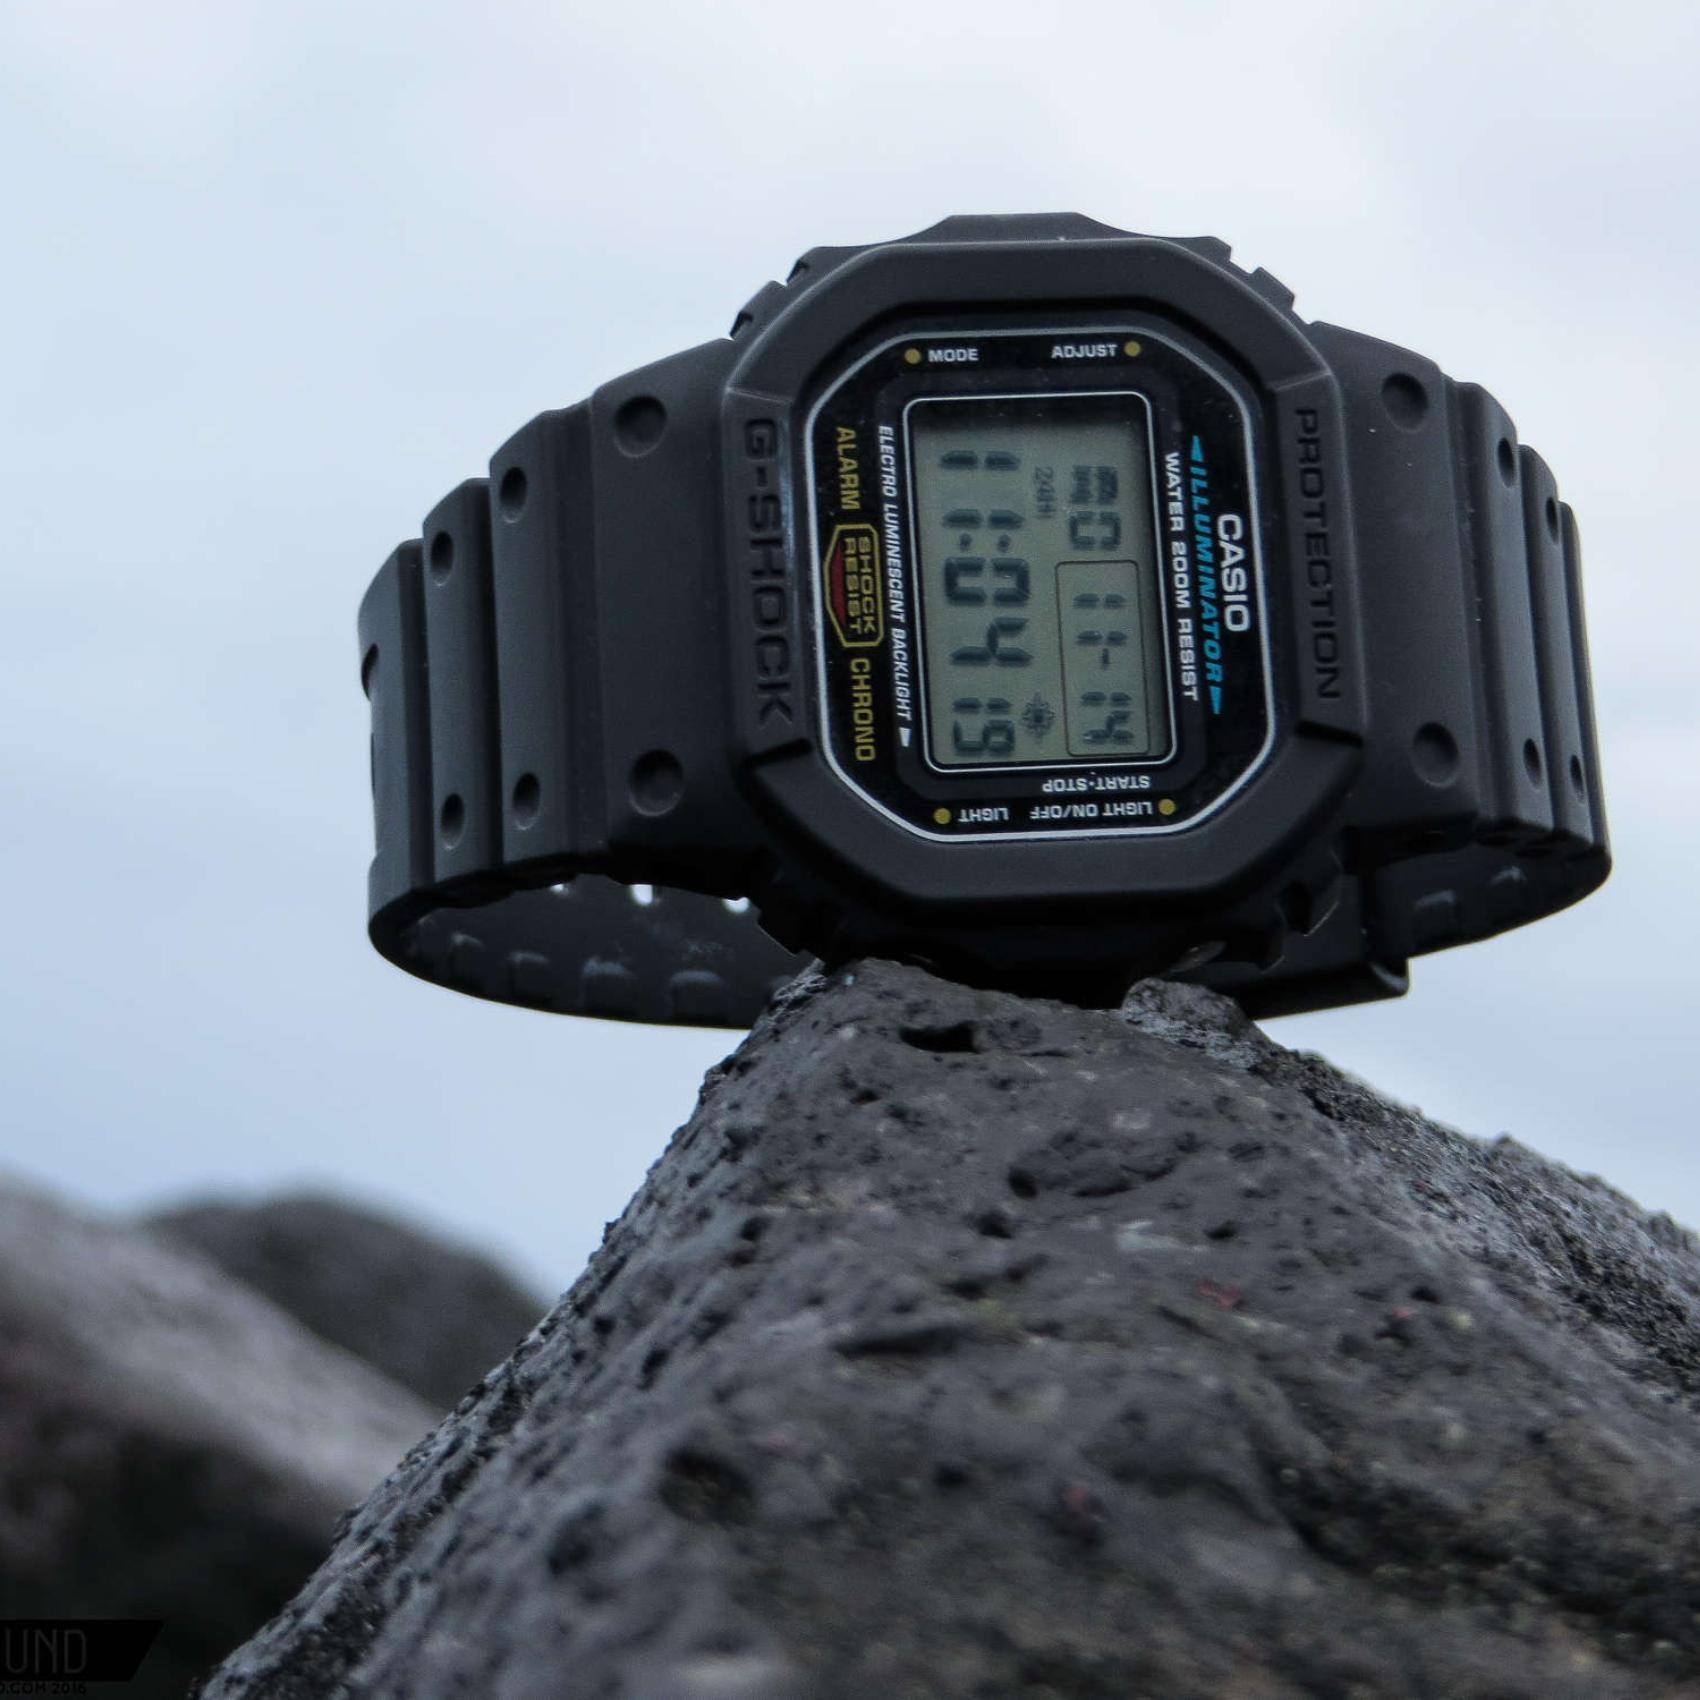 Ψηφιακό ρολόι Casio 5600 Series DW-5600E-1VER με μαύρο καουτσούκ λουράκι και μαύρο καντράν 48.9×42.8mm σε τετράγωνο σχημα.